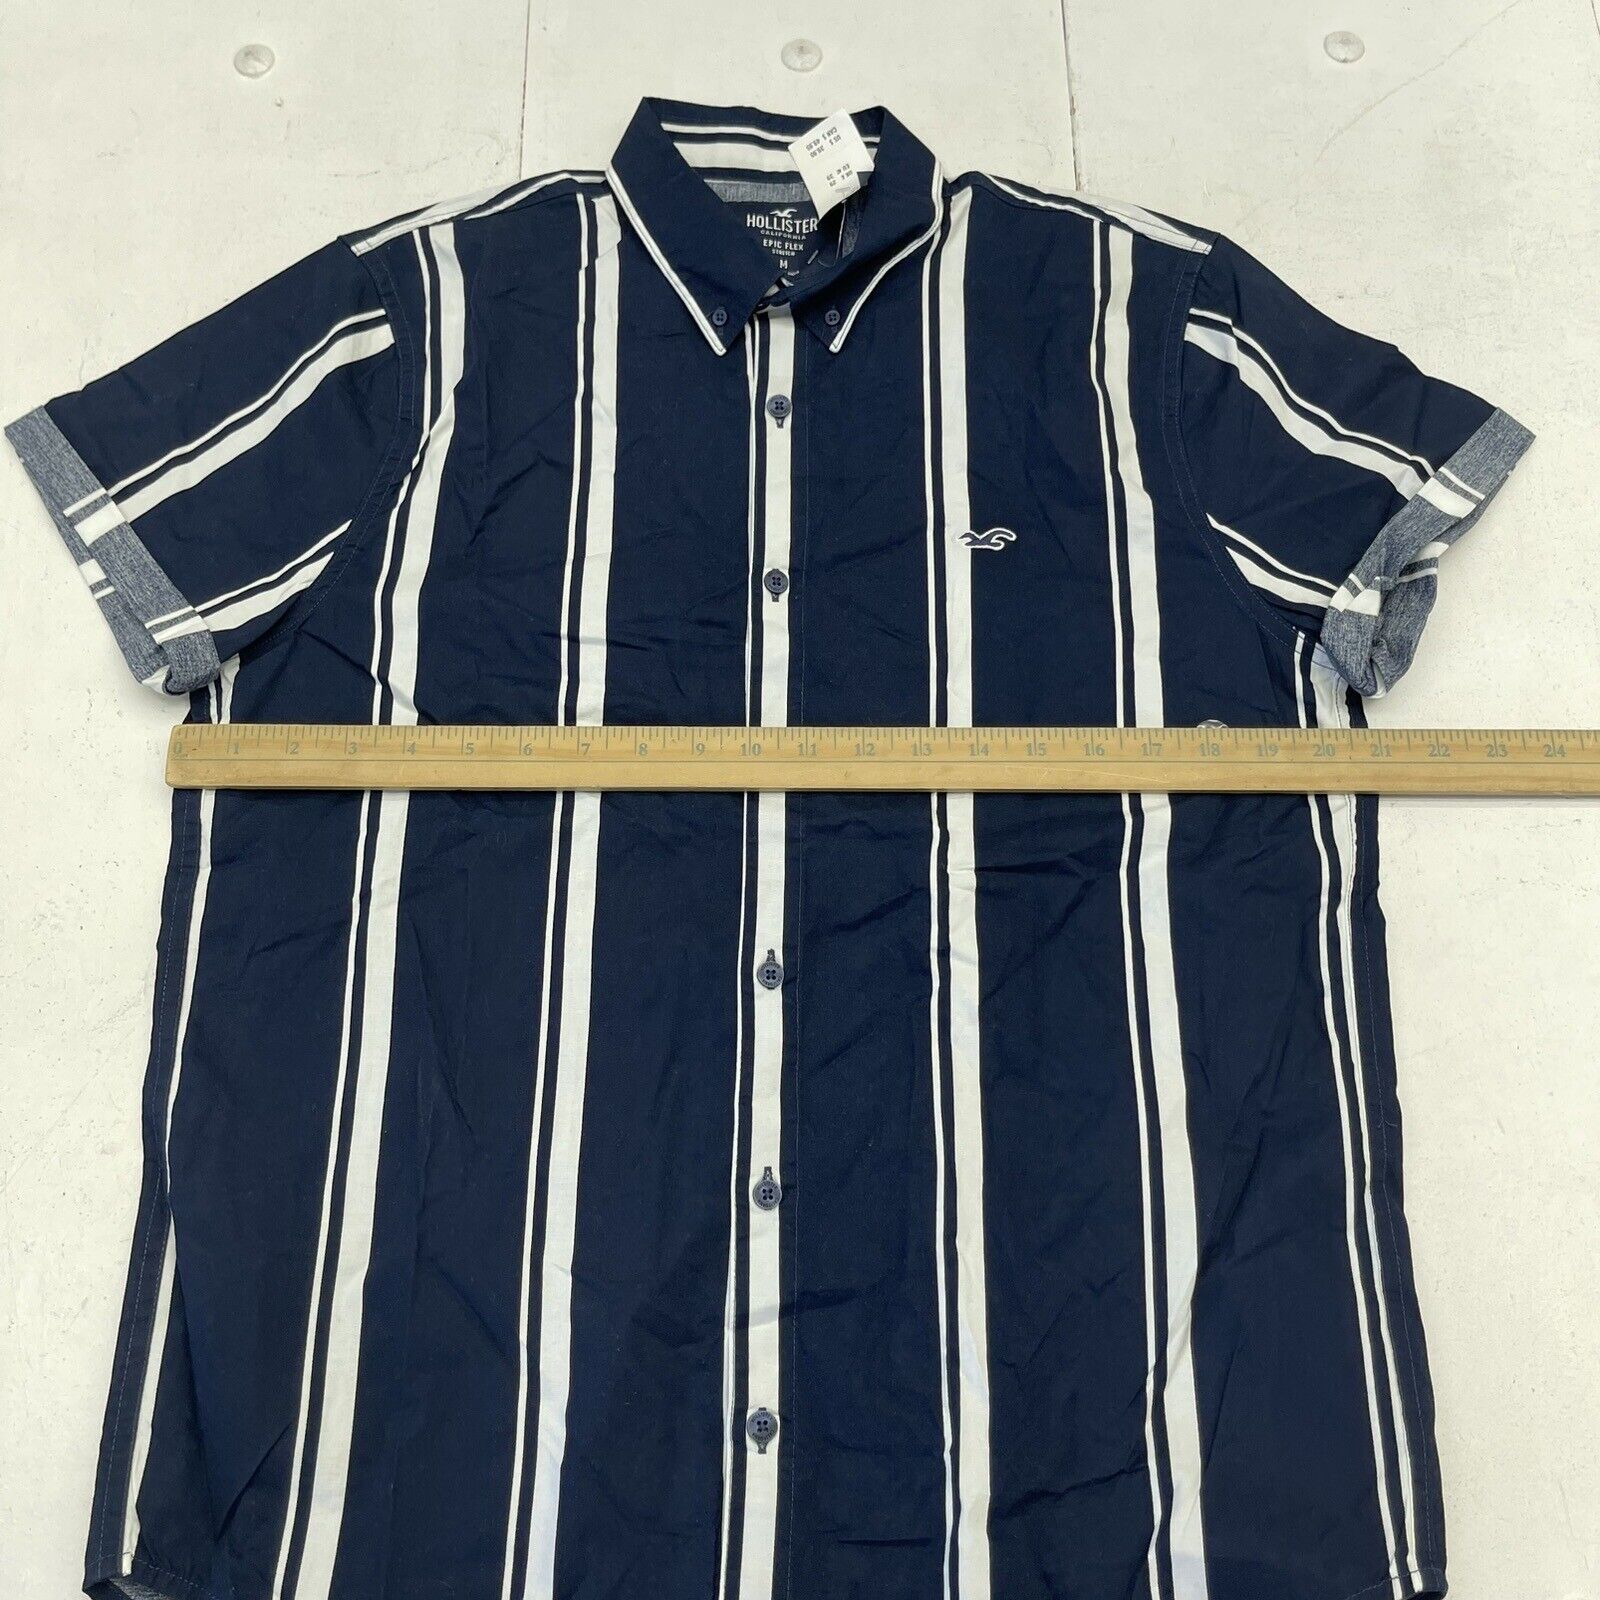 Hollister Striped t-shirt - UK L - Blue 17 Vintage Clothing